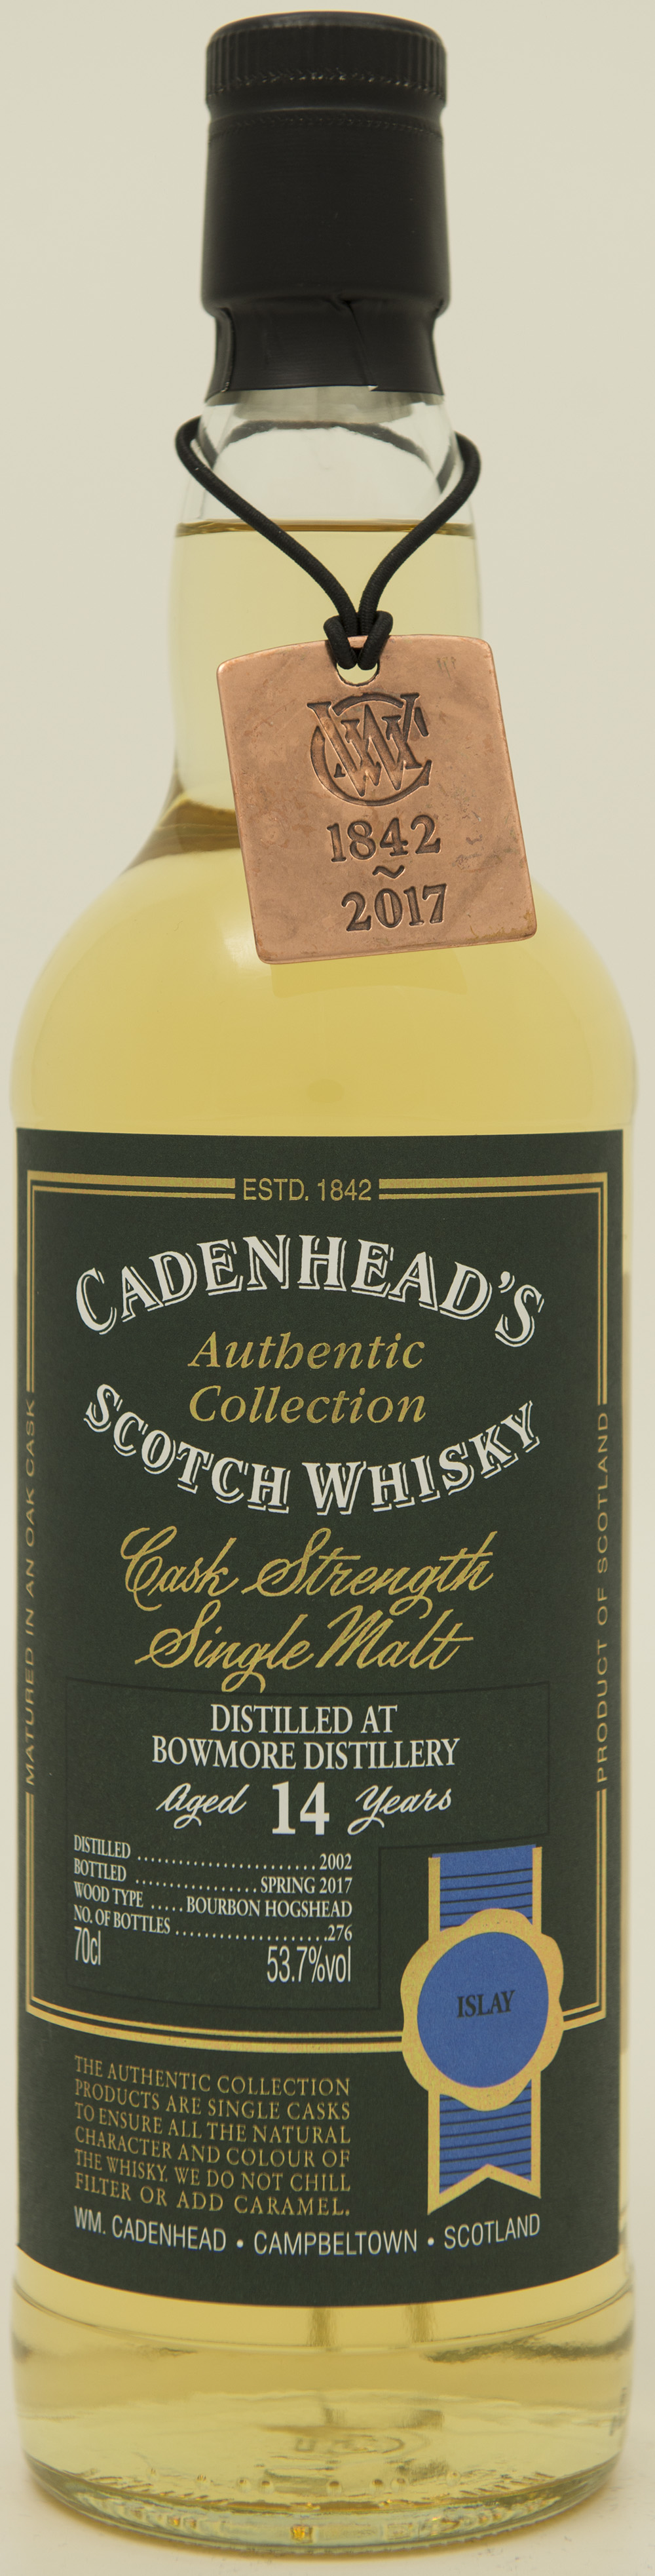 Billede: DSC_3743 - Cadenhead's Authentic Collection Bowmore 14 - bottle front.jpg